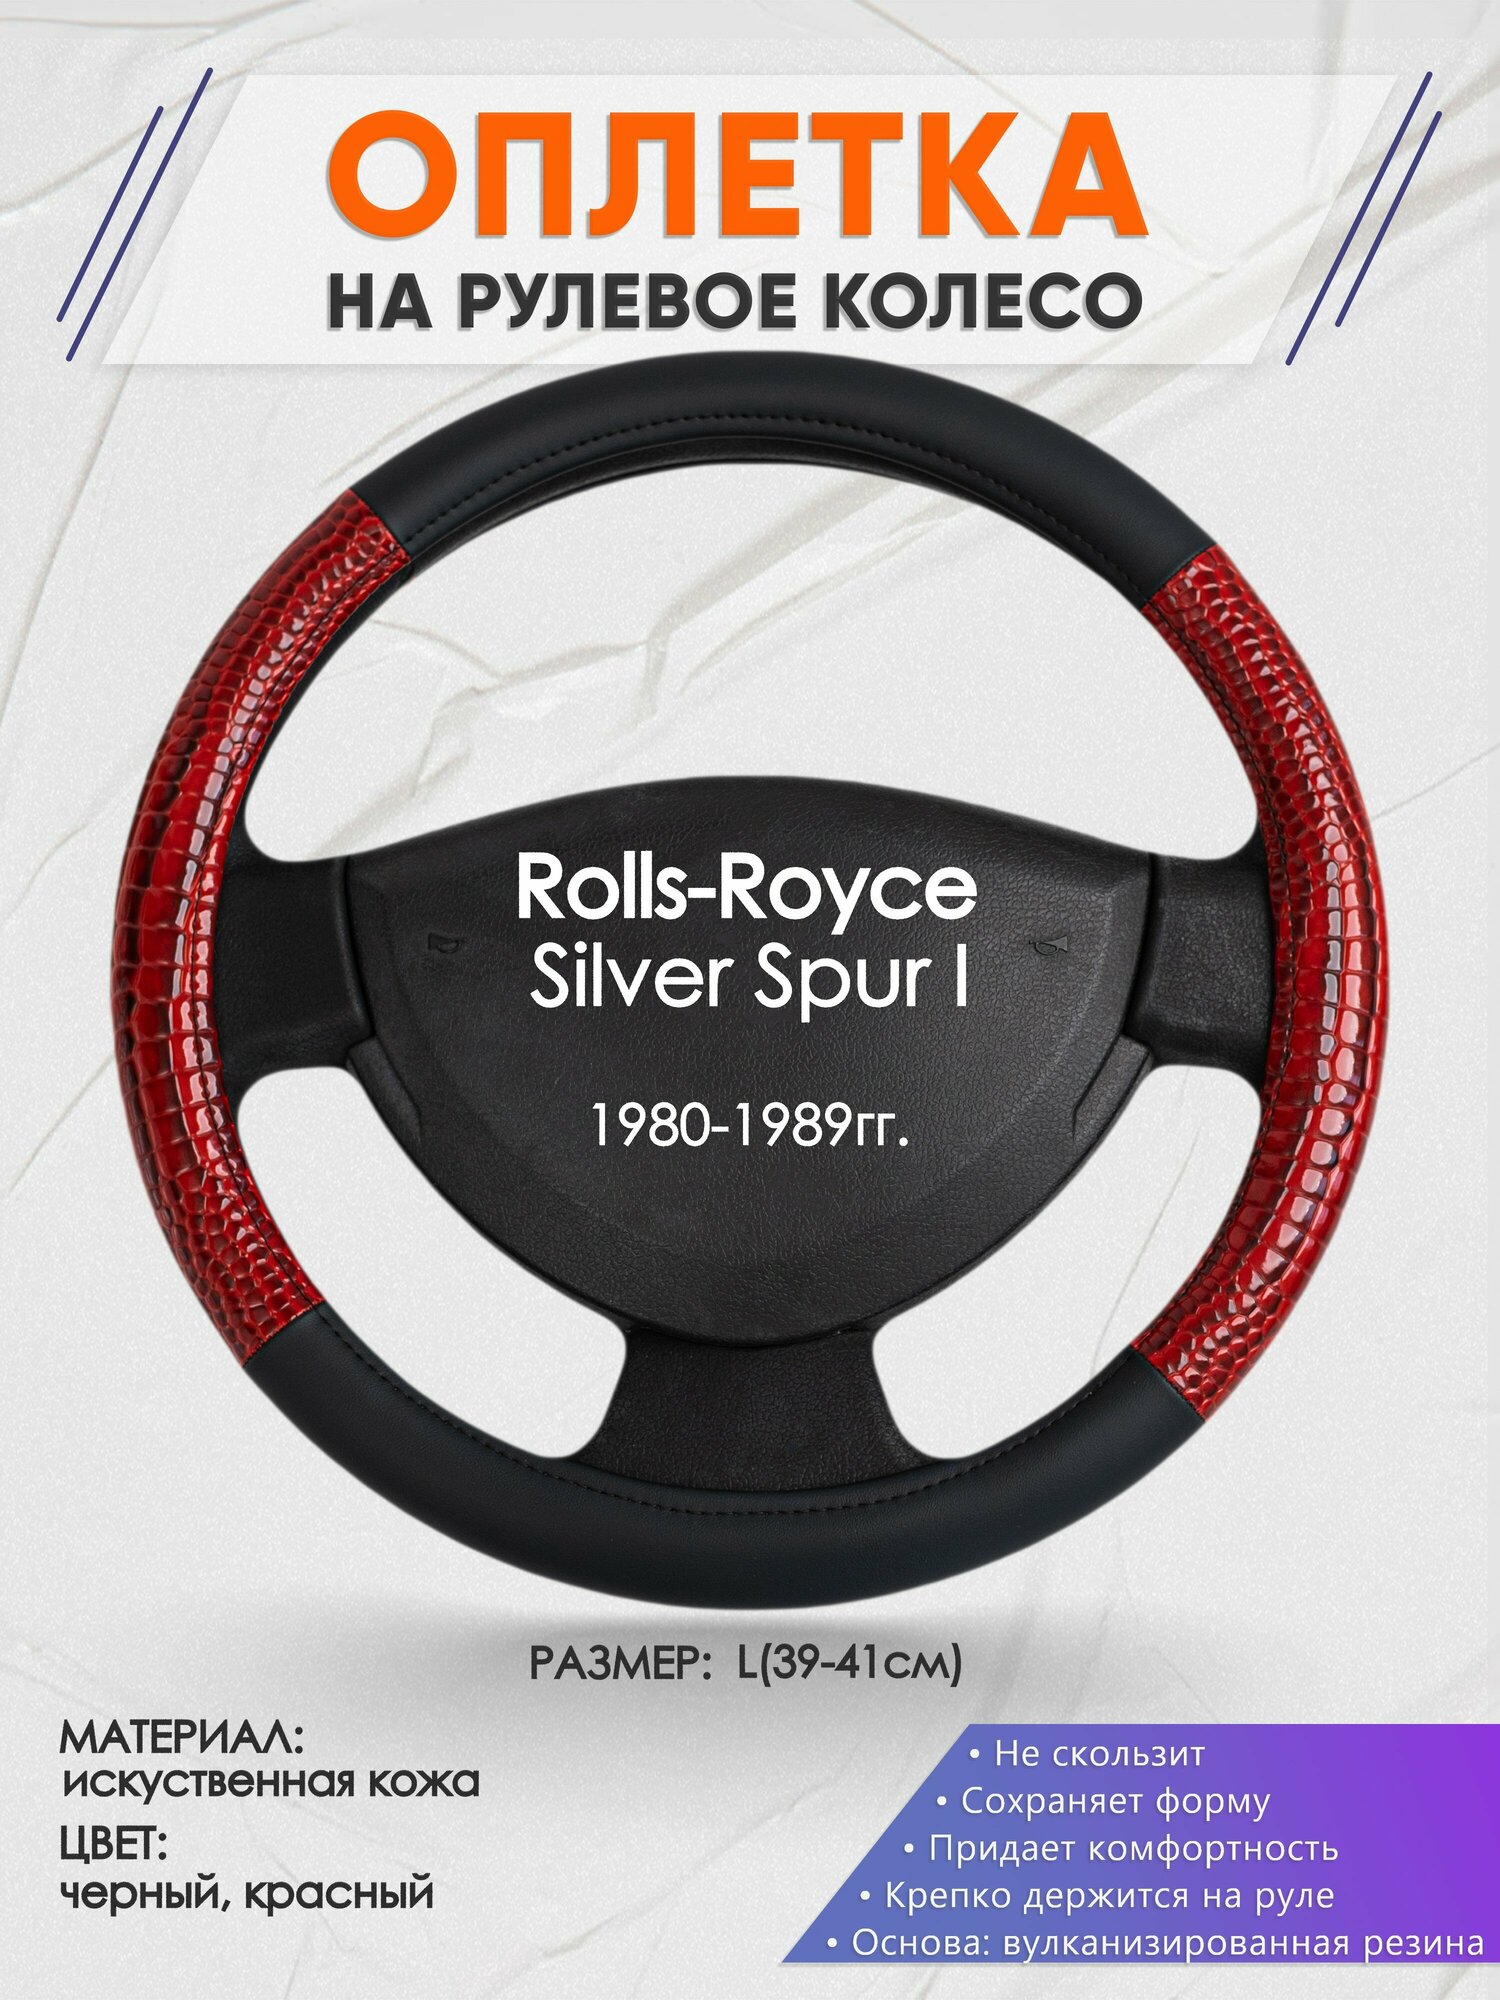 Оплетка на руль для Rolls-Royce Silver Spur I(РоллсРойс Силвер Спур) 1980-1989, L(39-41см), Искусственная кожа 16